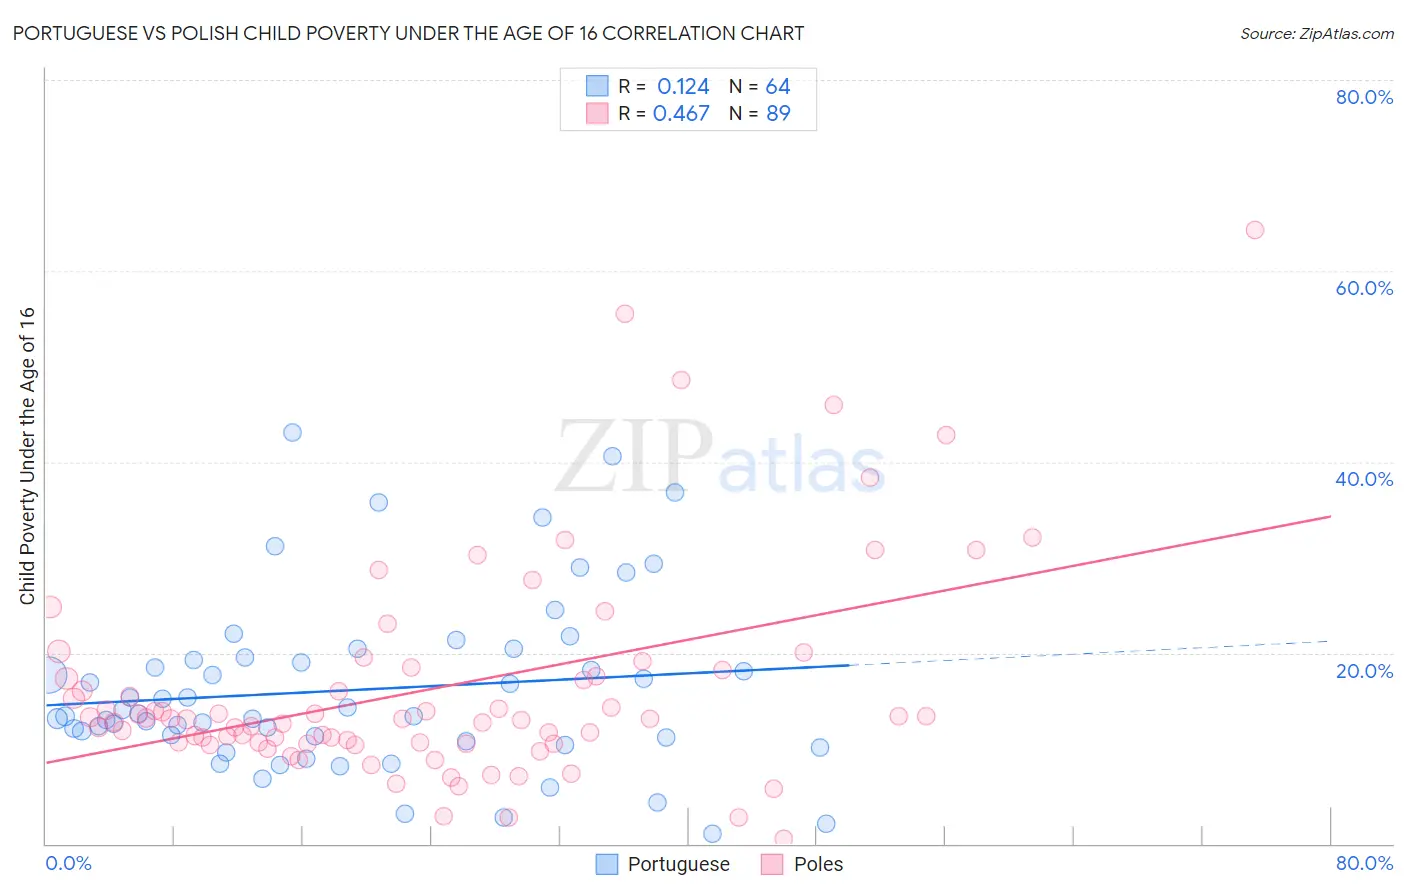 Portuguese vs Polish Child Poverty Under the Age of 16